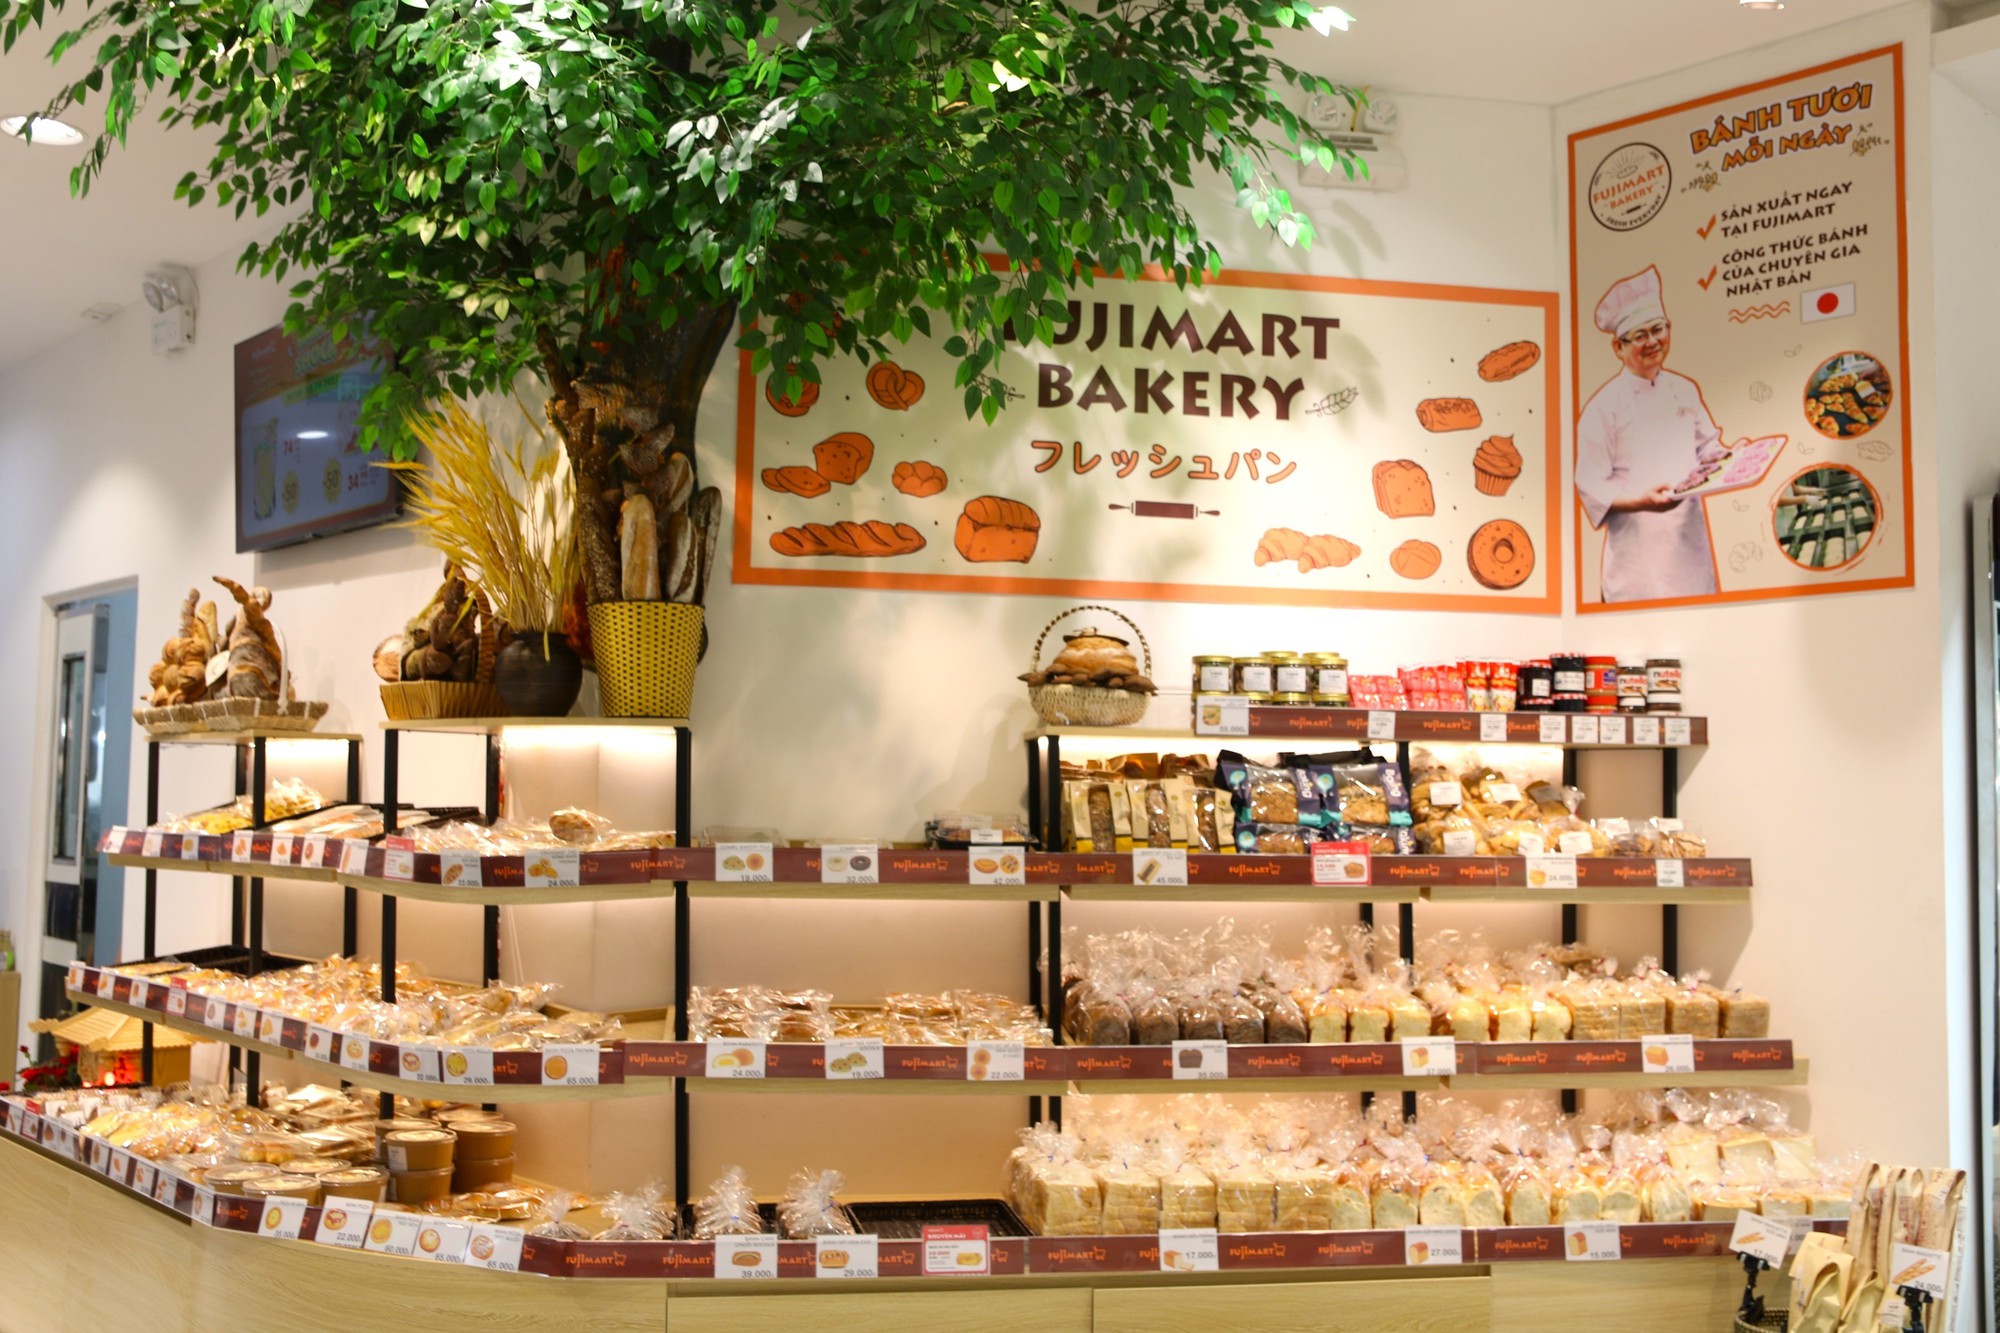 Chính thức khai trương siêu thị FujiMart tiếp theo tại Tầng 2 tòa Hateco Laroma, Huỳnh Thúc Kháng, Hà Nội - Ảnh 5.